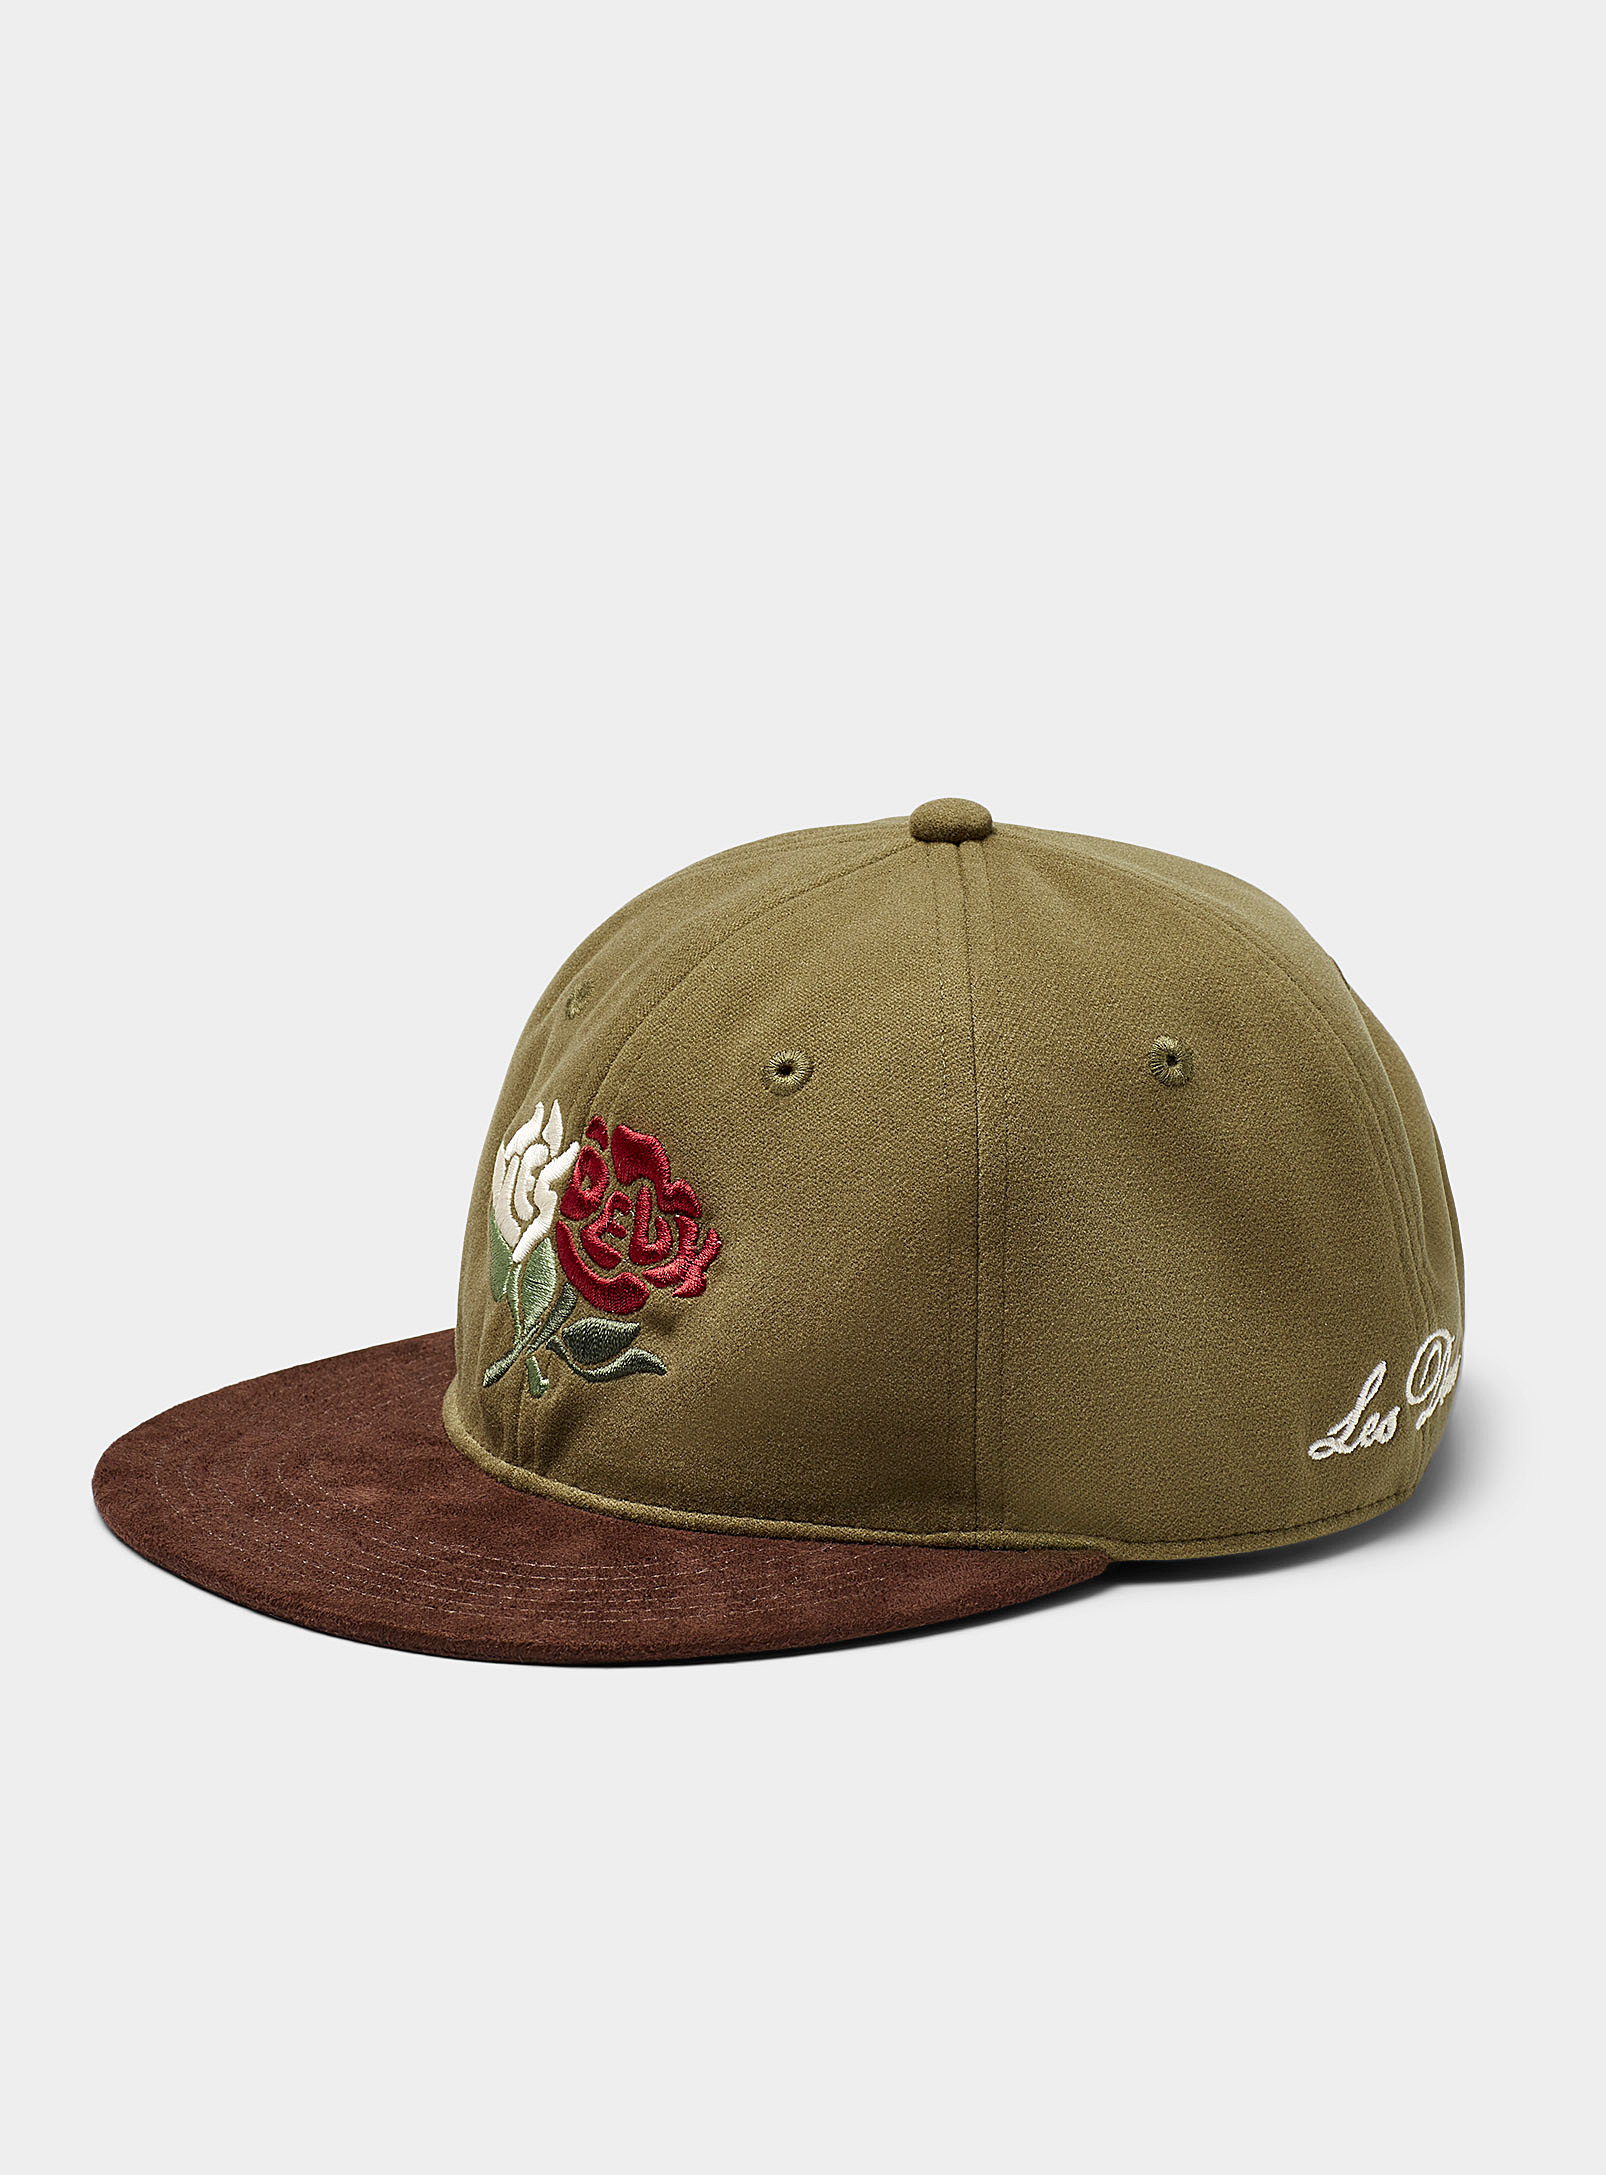 Les Deux - La casquette baseball visière suède logo fleurs